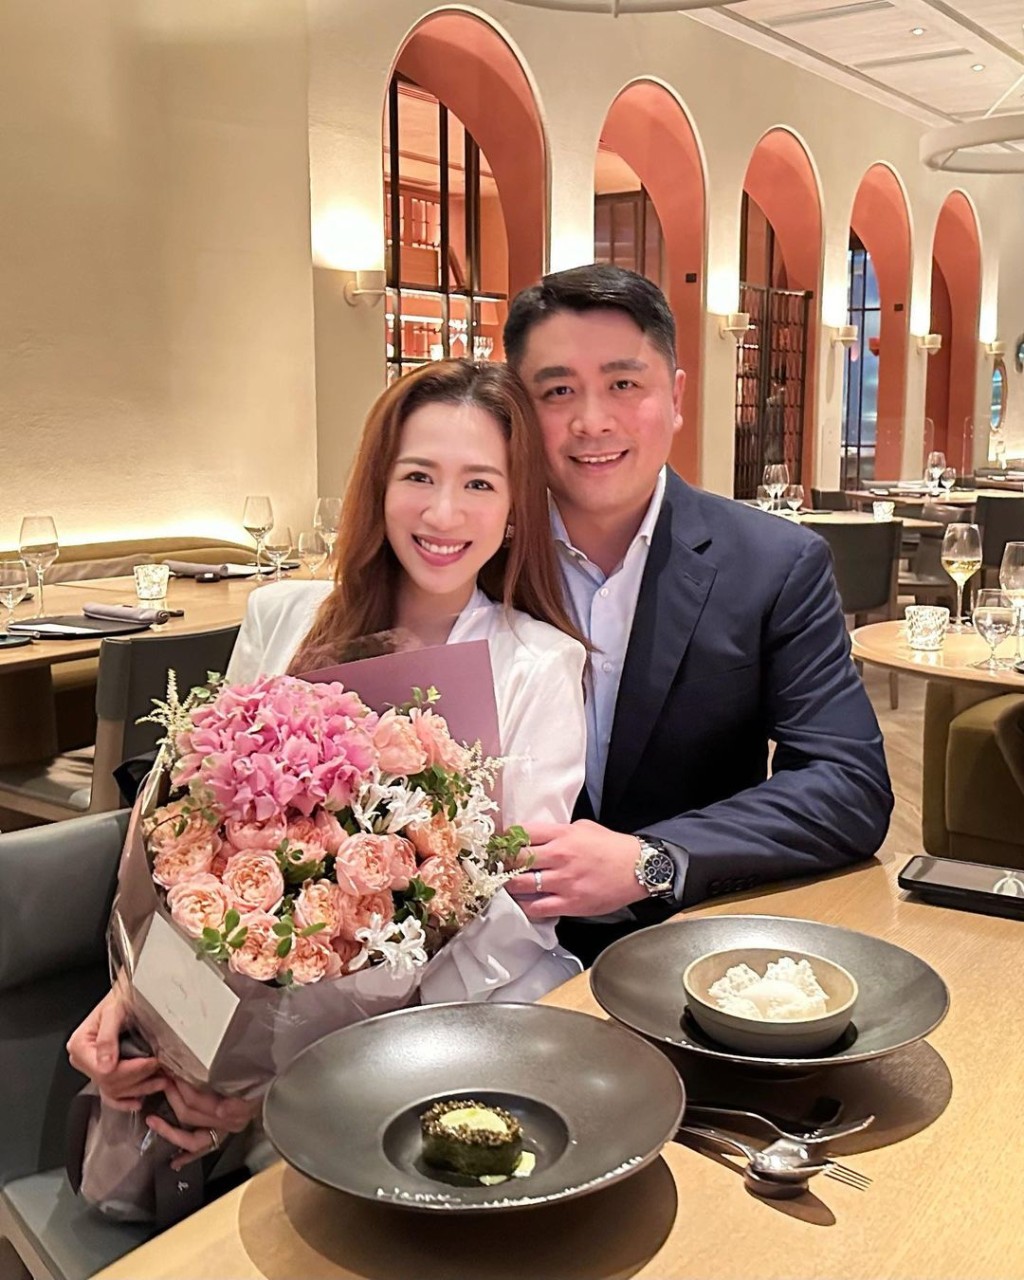 岑杏賢昨晚分享與丈夫慶祝結婚兩周年甜蜜照。